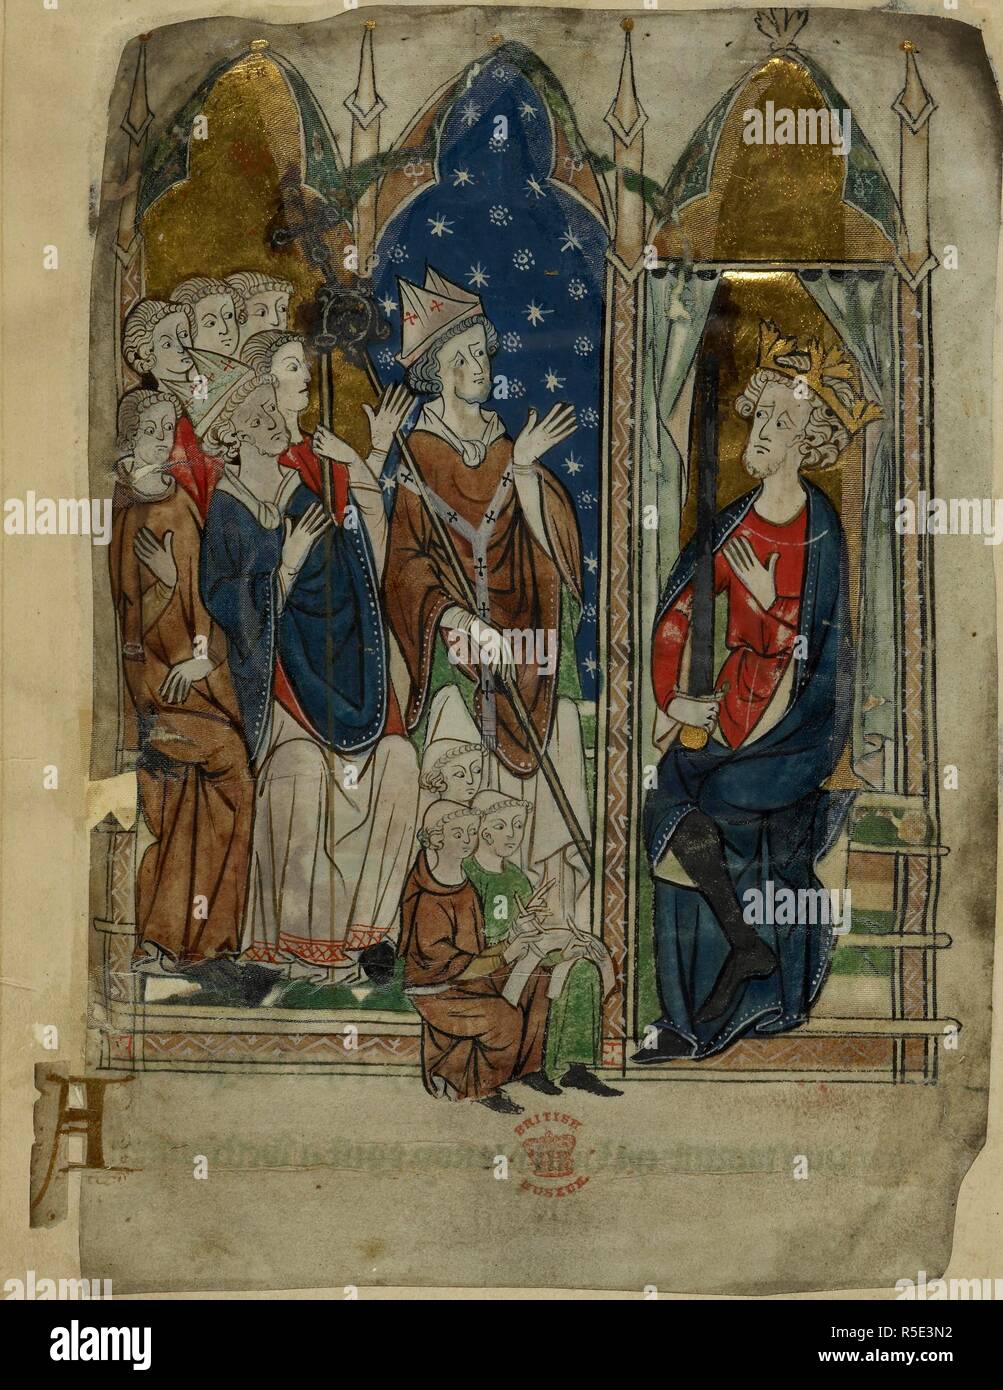 Il re Edoardo io seduto con la sua corte e gli assistenti. Cronache varie. circa 1280-1300. Fonte: Cotone Vitellius A. XIII, f.6v. Lingua: anglo-francese. Foto Stock